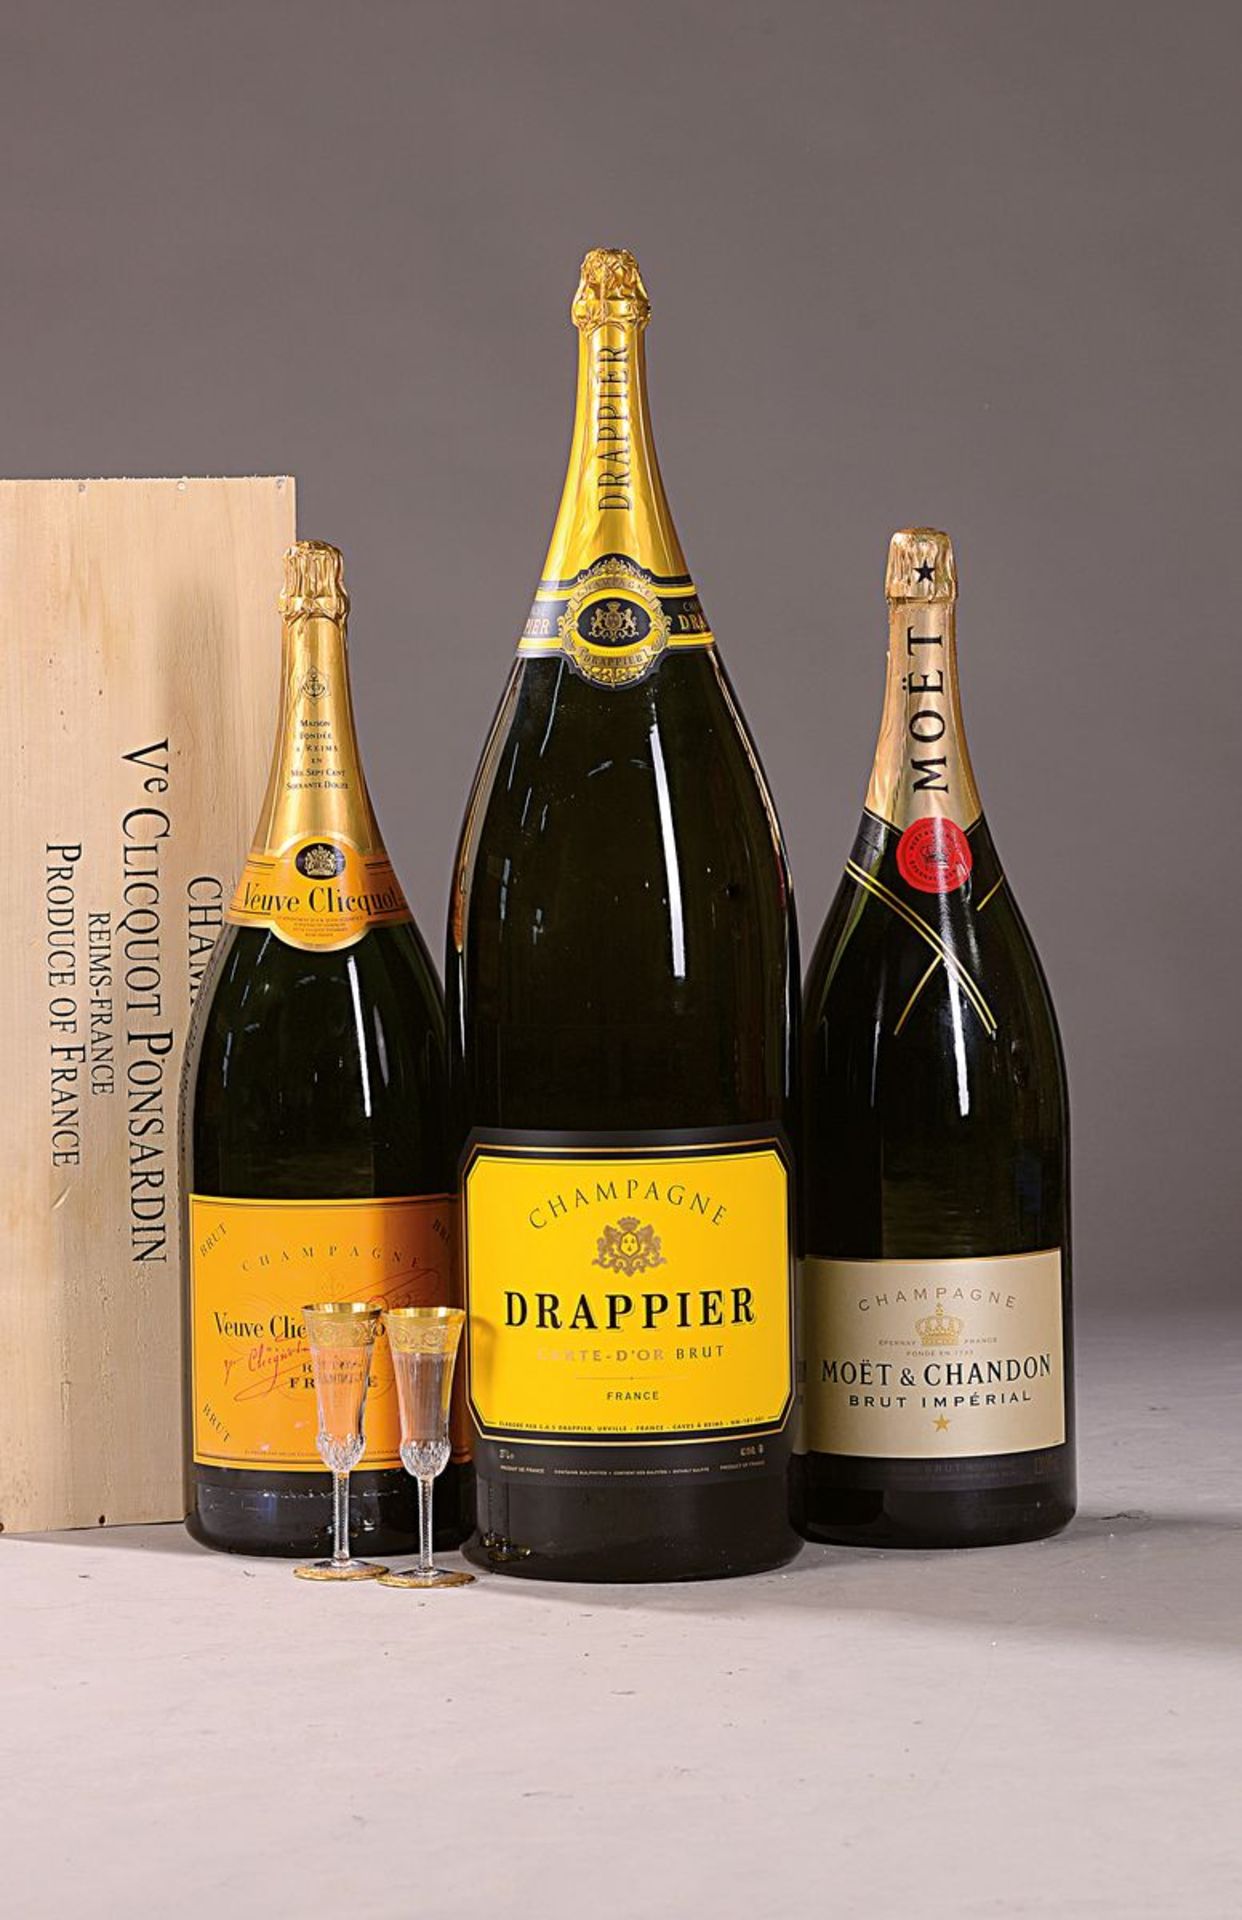 1 Fl. Primat, Champagner Drappier, Carte d'Or Brut,